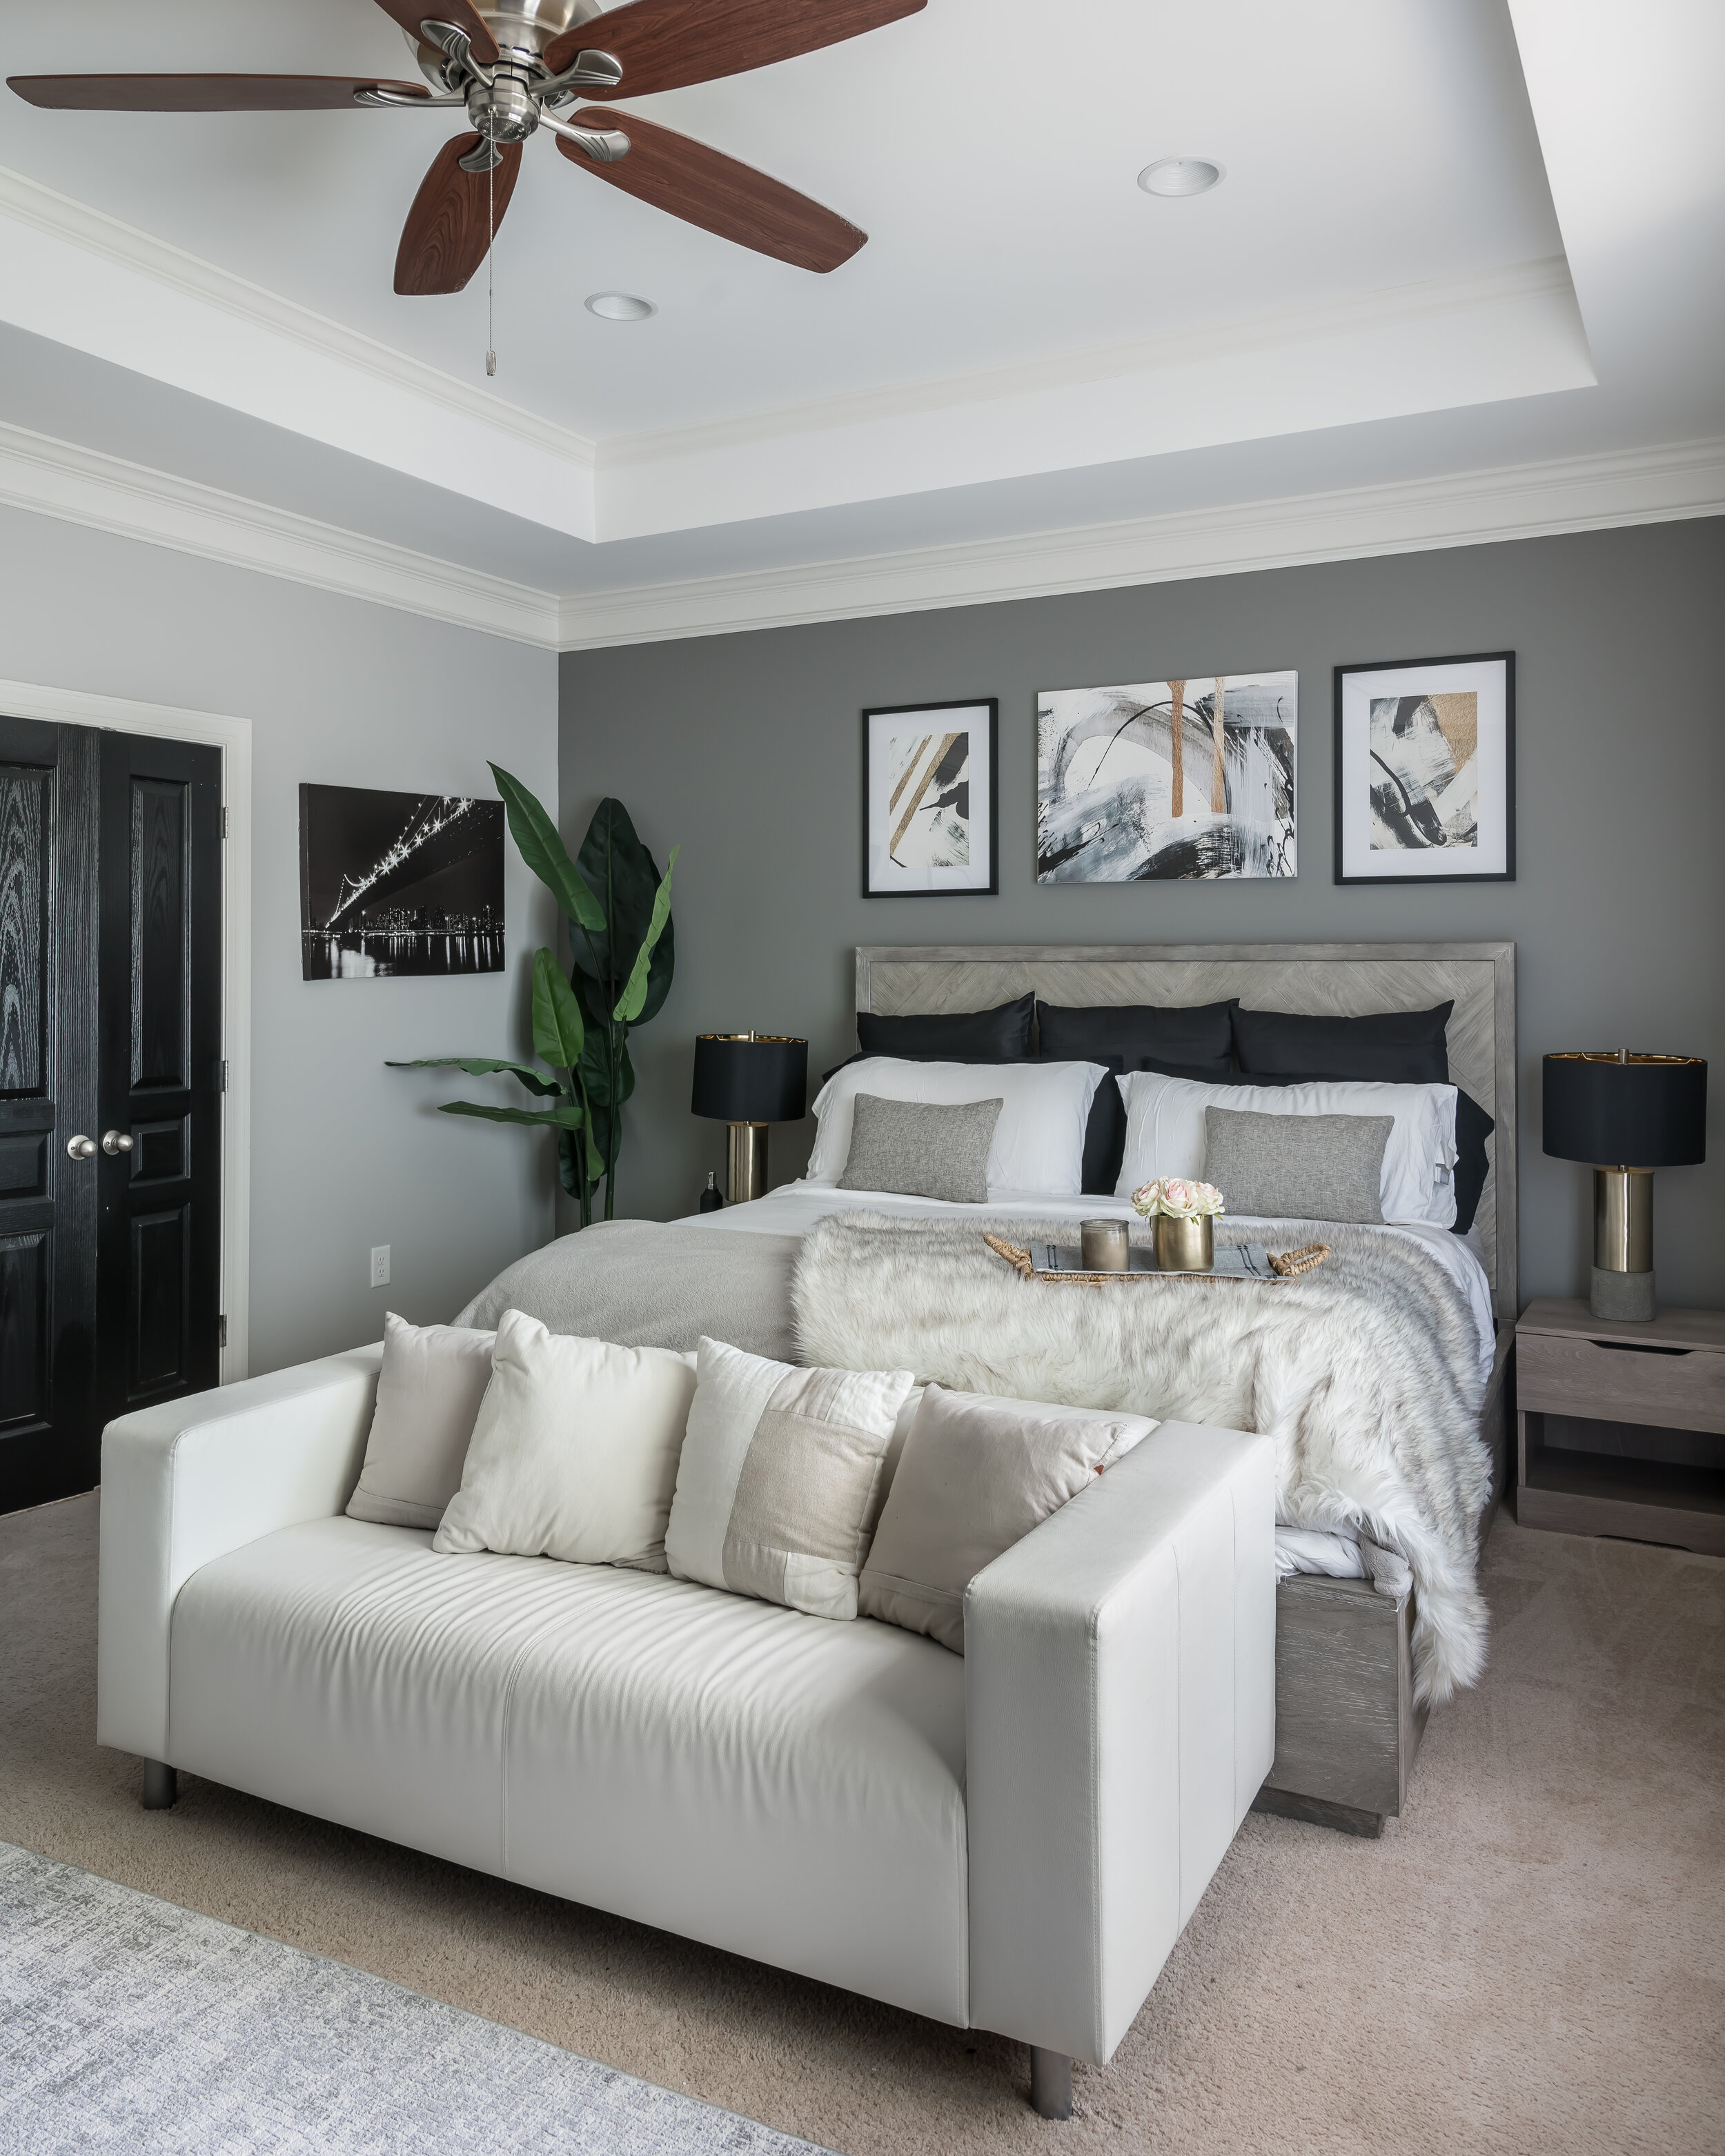 Louis Vuitton Bedroom Design [Video]  Bedroom themes, Bedroom decor, Room  decor bedroom